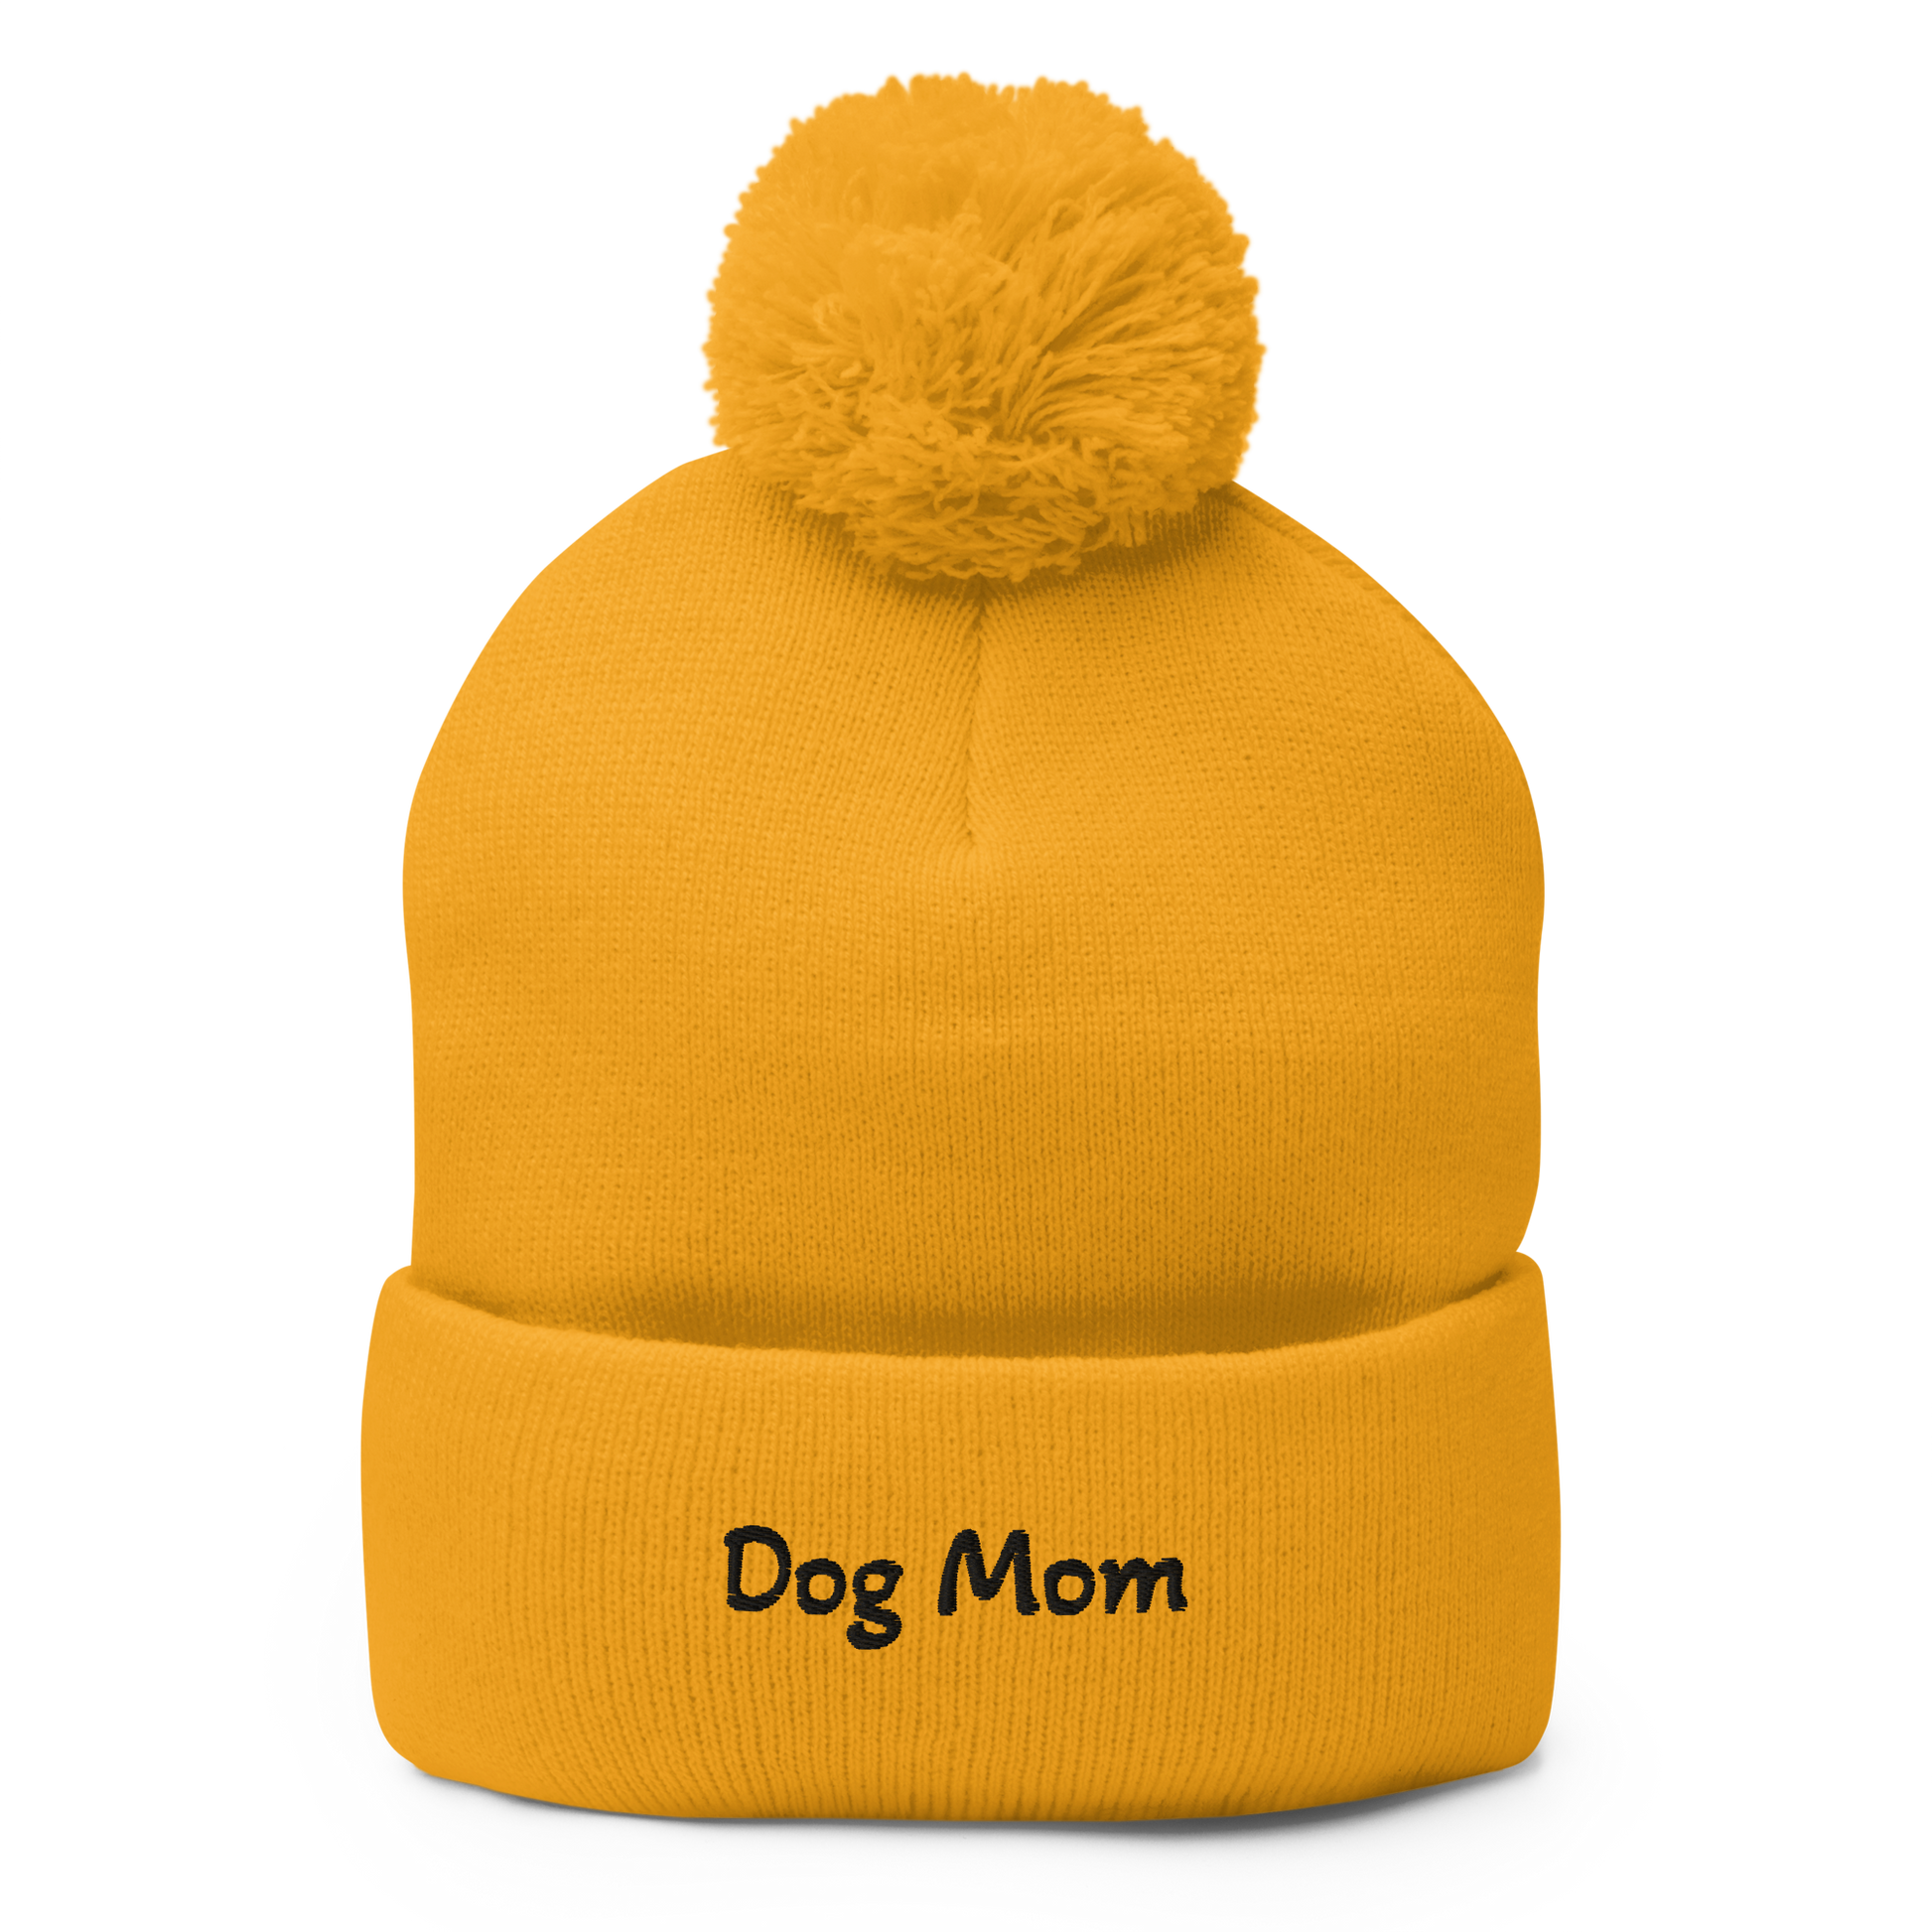 Dog Mom Neon Pom-Pom Beanie - Ruff Roasters Coffee Co.